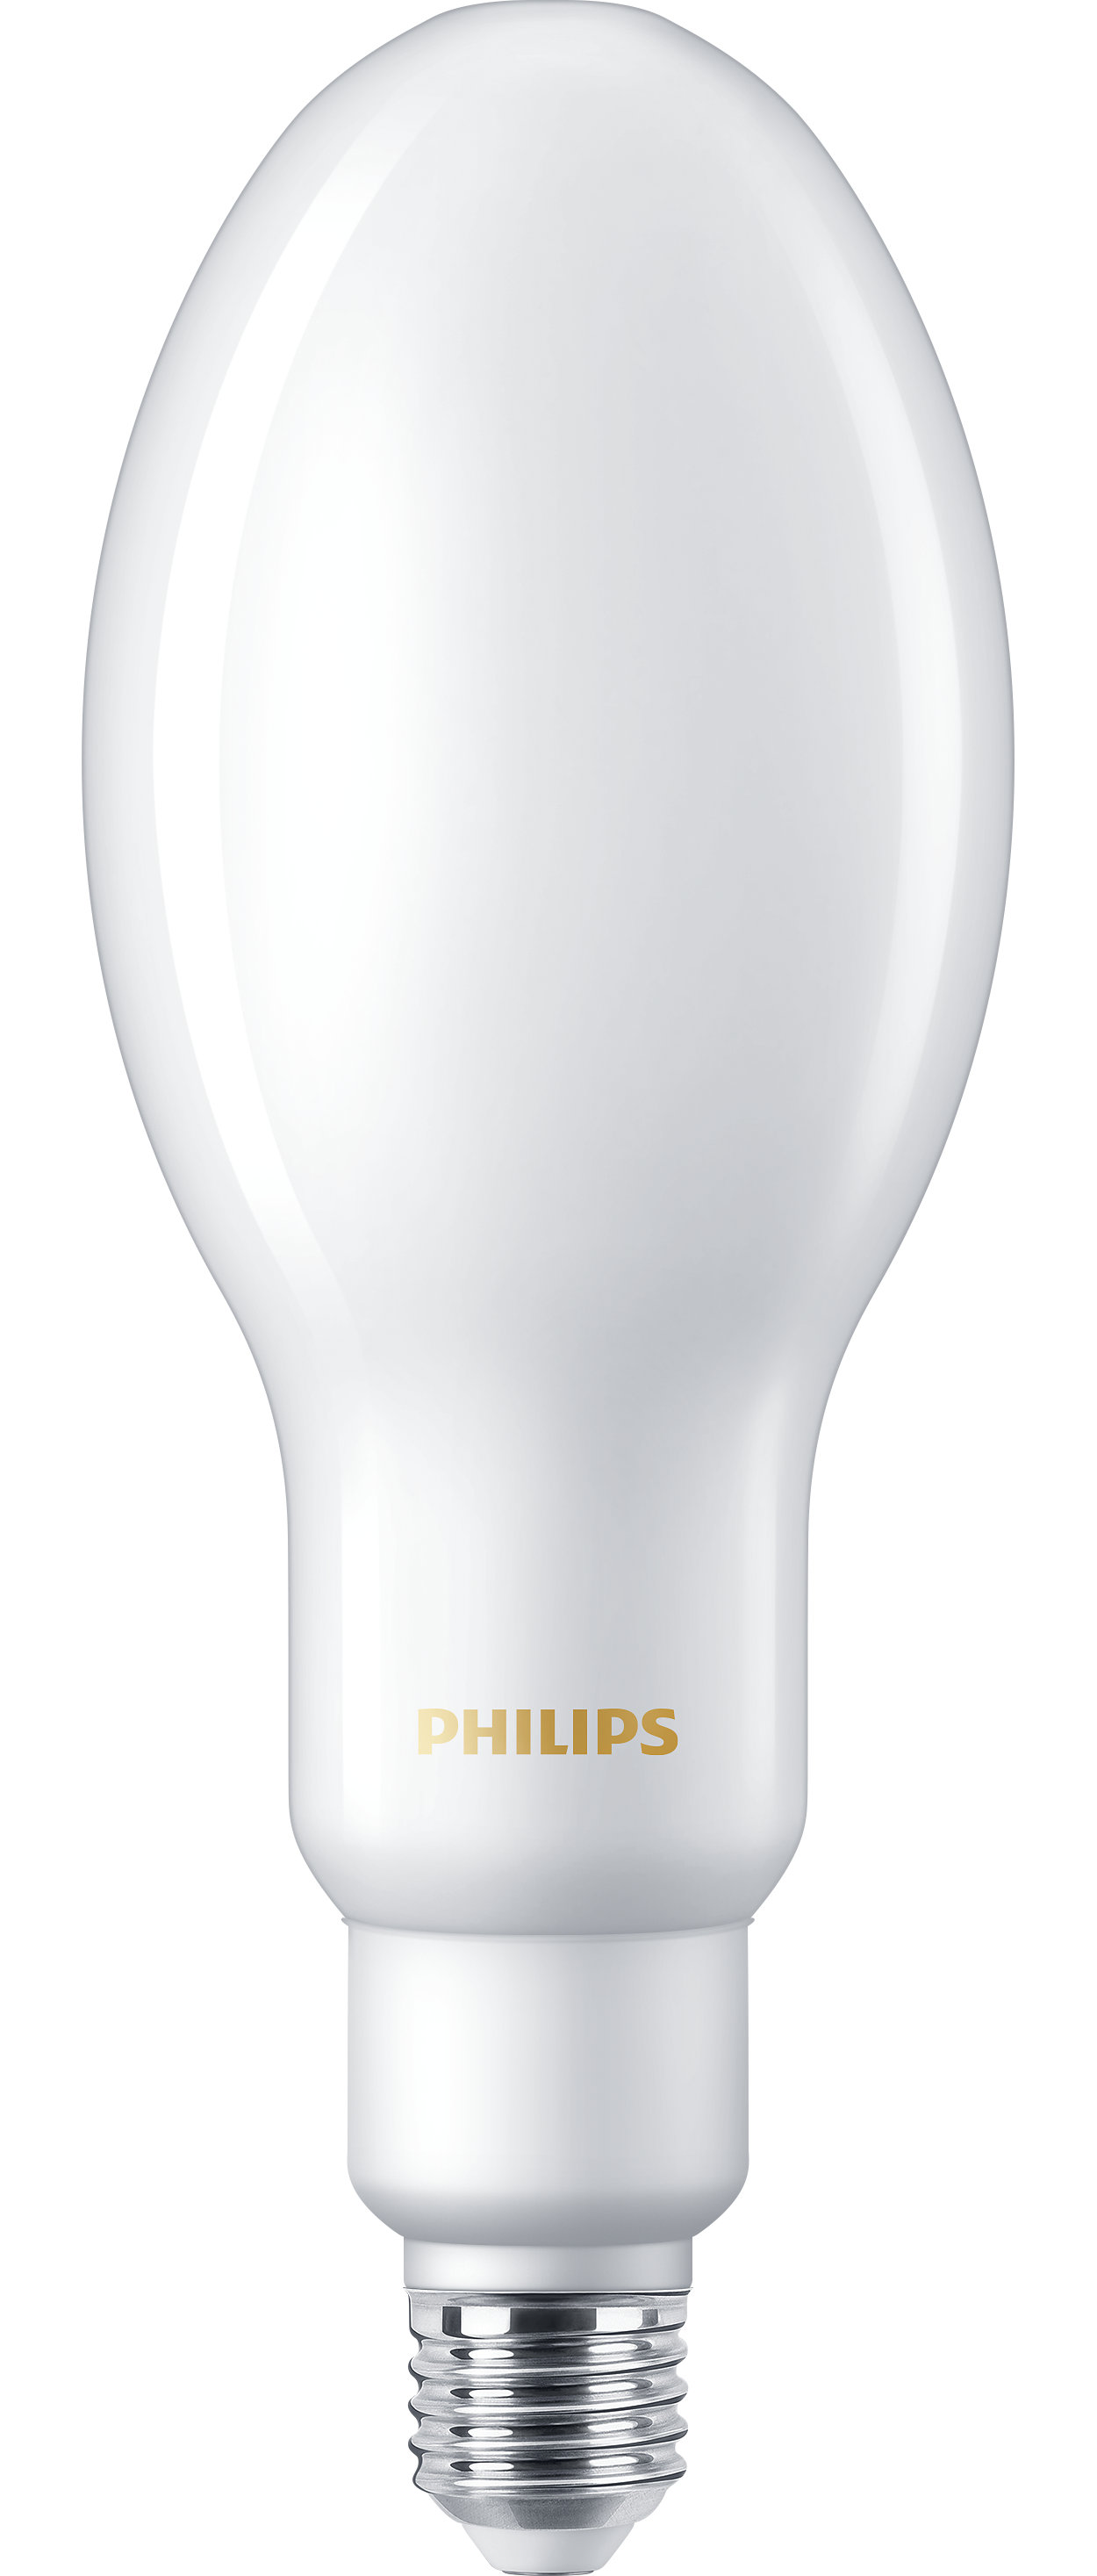 Jokapäiväisiin valaistustarpeisiin suunniteltu uusi LED HPL -ratkaisu, joka korvaa perinteiset purkauslamput (HID)